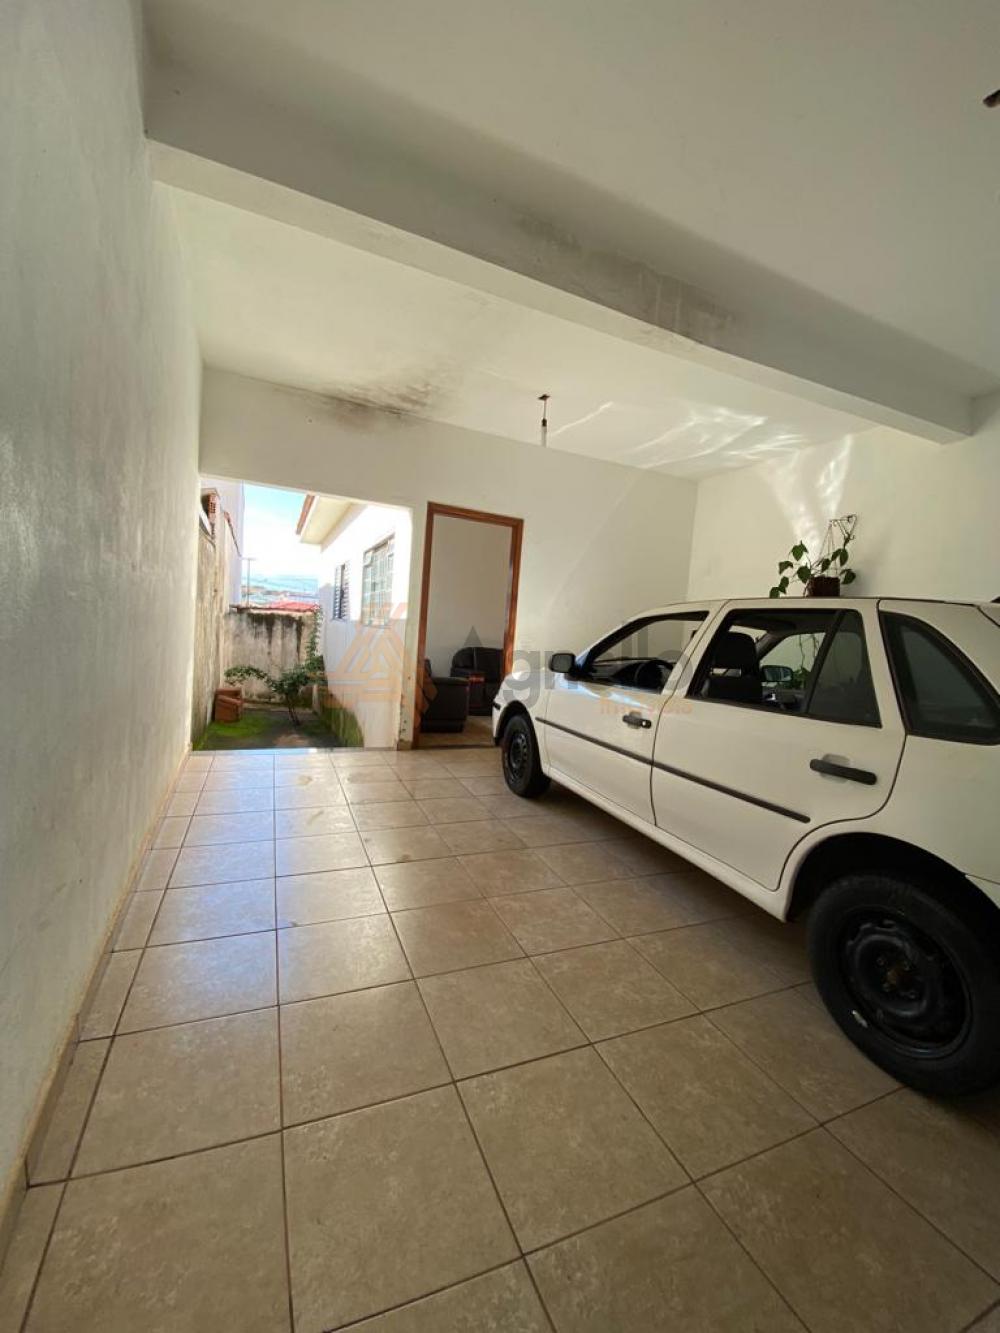 Comprar Casa / Bairro em Franca R$ 215.000,00 - Foto 11